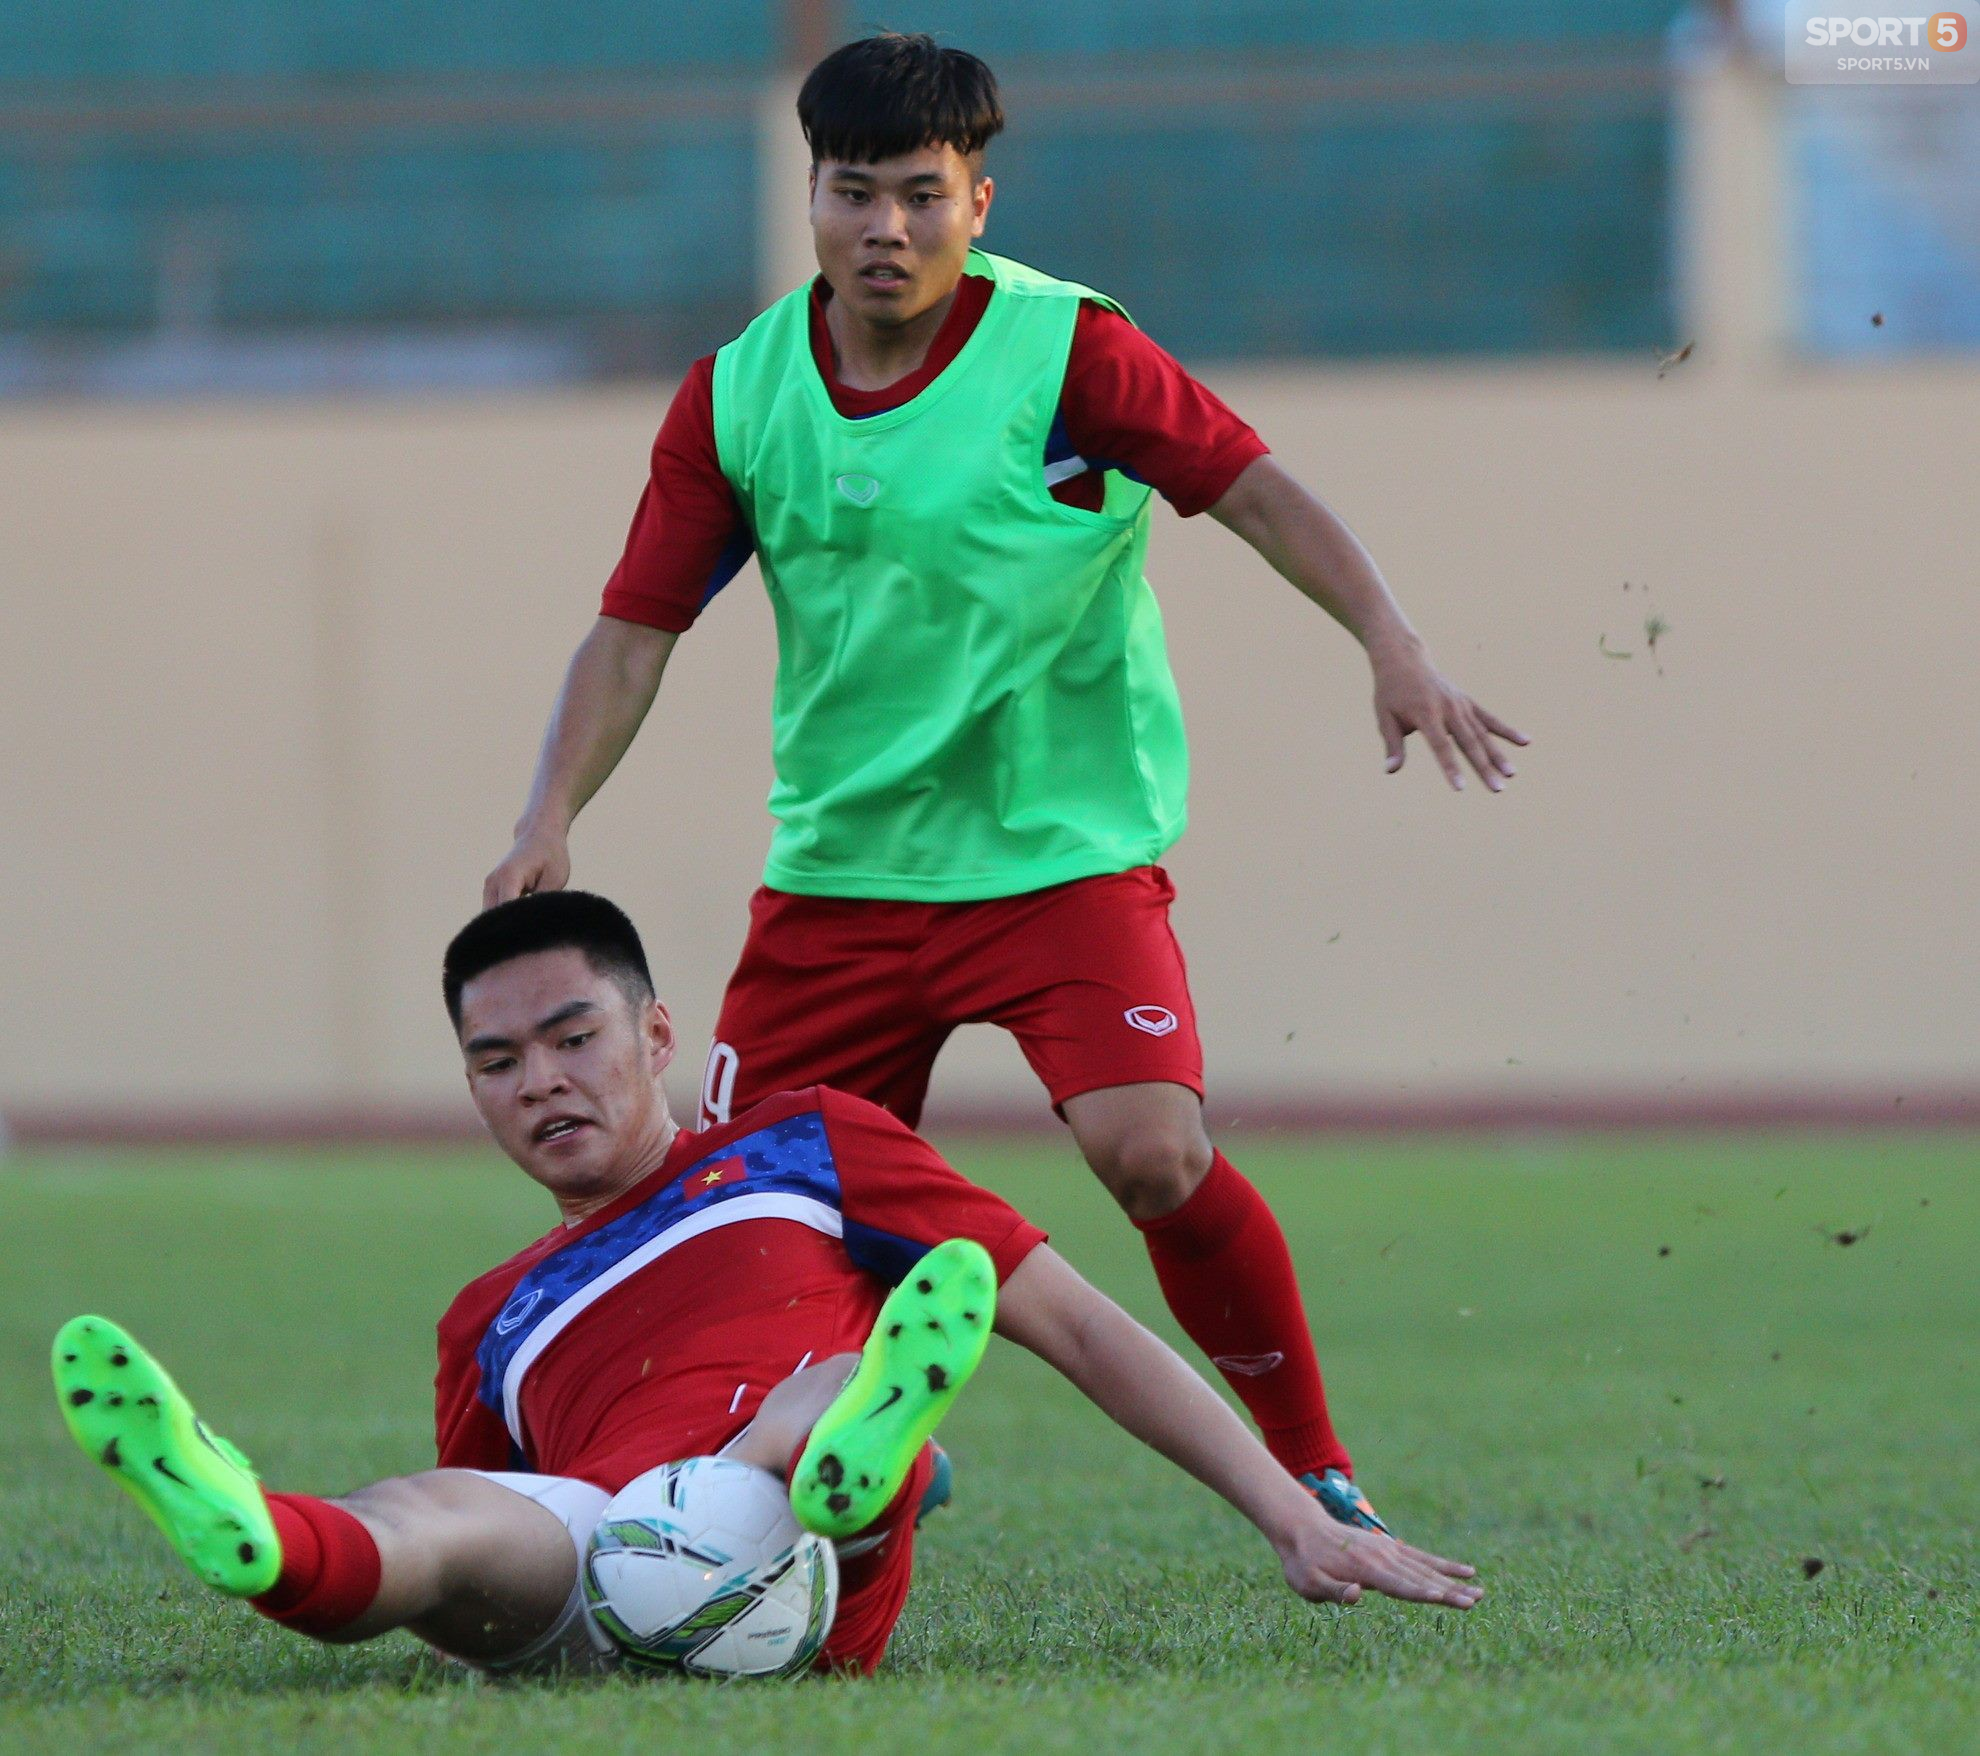  Tuyển thủ U19 Việt Nam bị gãy tay, phải ở lại Trung Quốc chờ phẫu thuật - Ảnh 1.